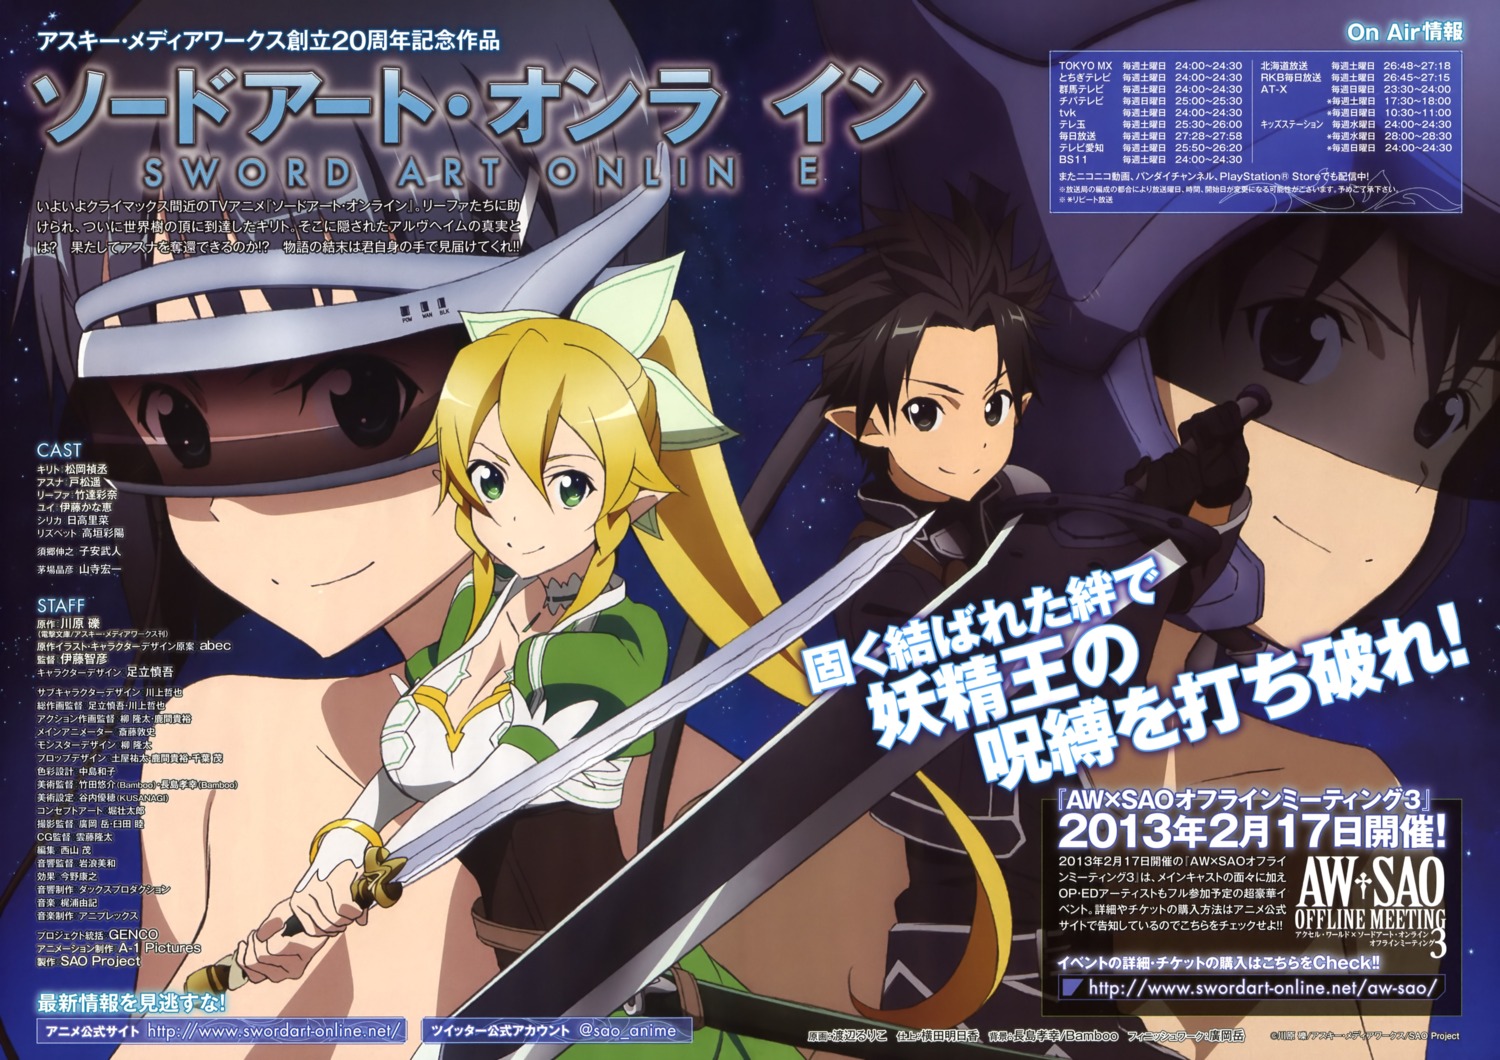 Watanabe Ruriko Alfheim Online Sword Art Online Kirigaya Suguha Kirito Leafa Cleavage Naked Pointy Ears Sword Yande Re